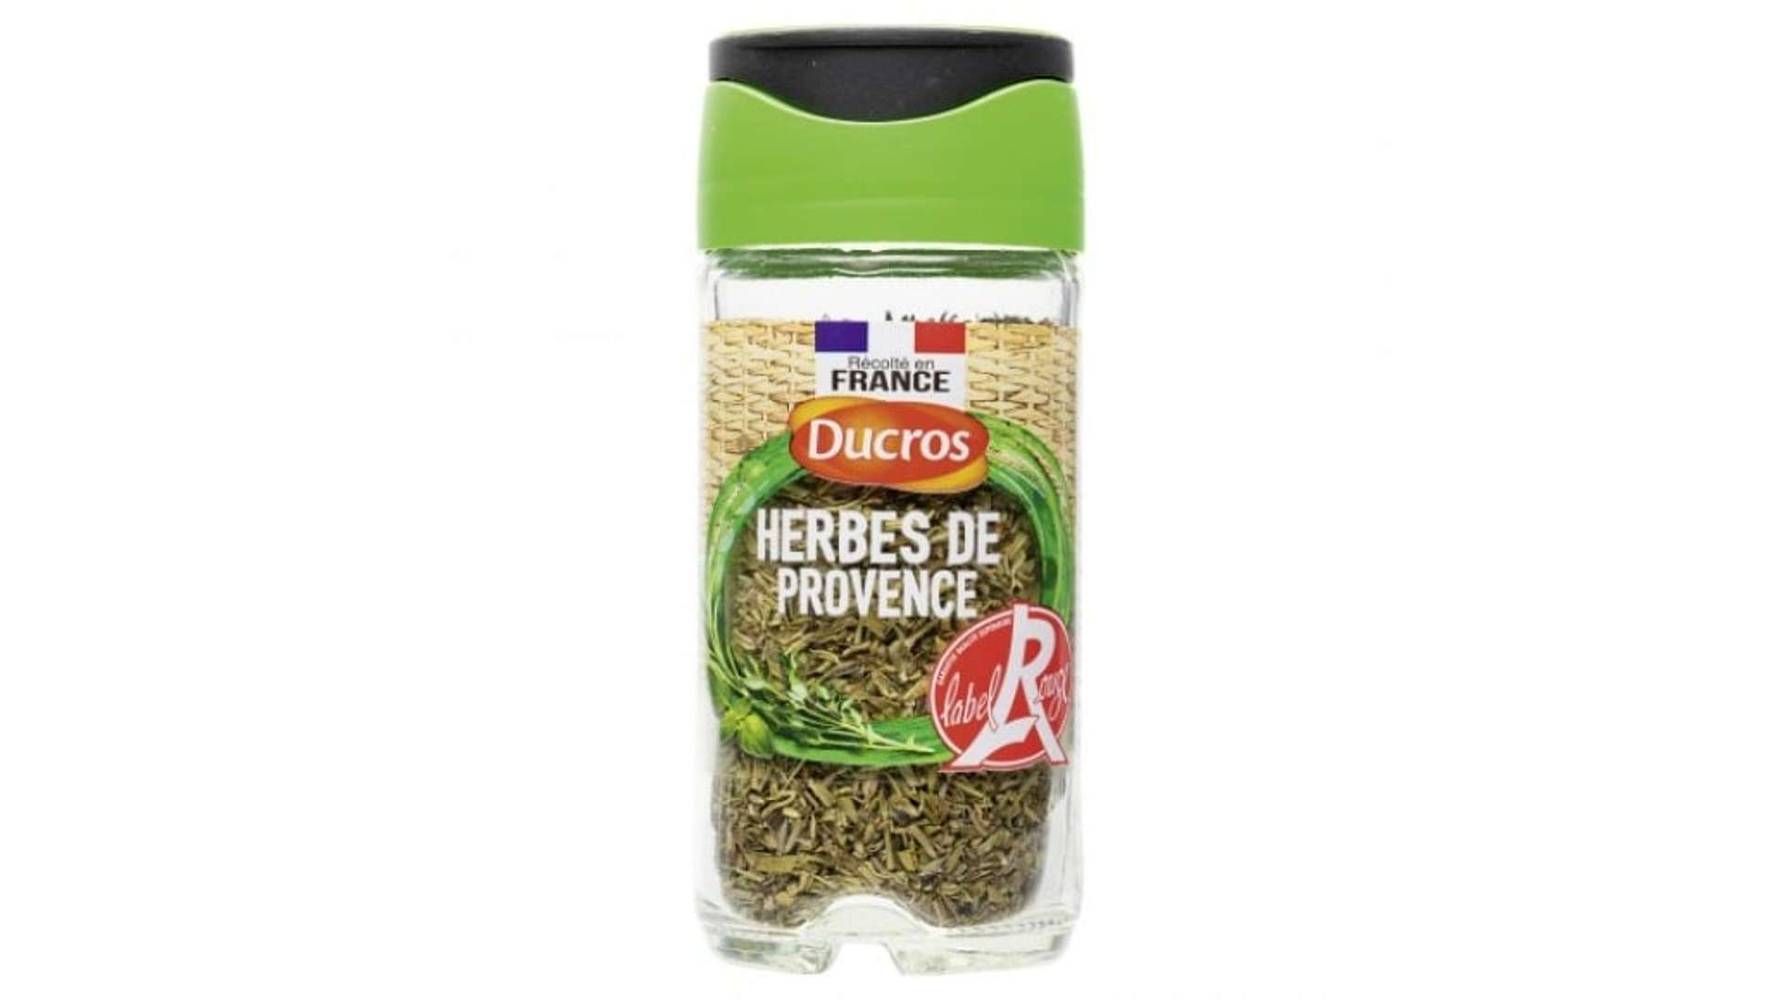 Ducros - Herbes de Provence label rouge